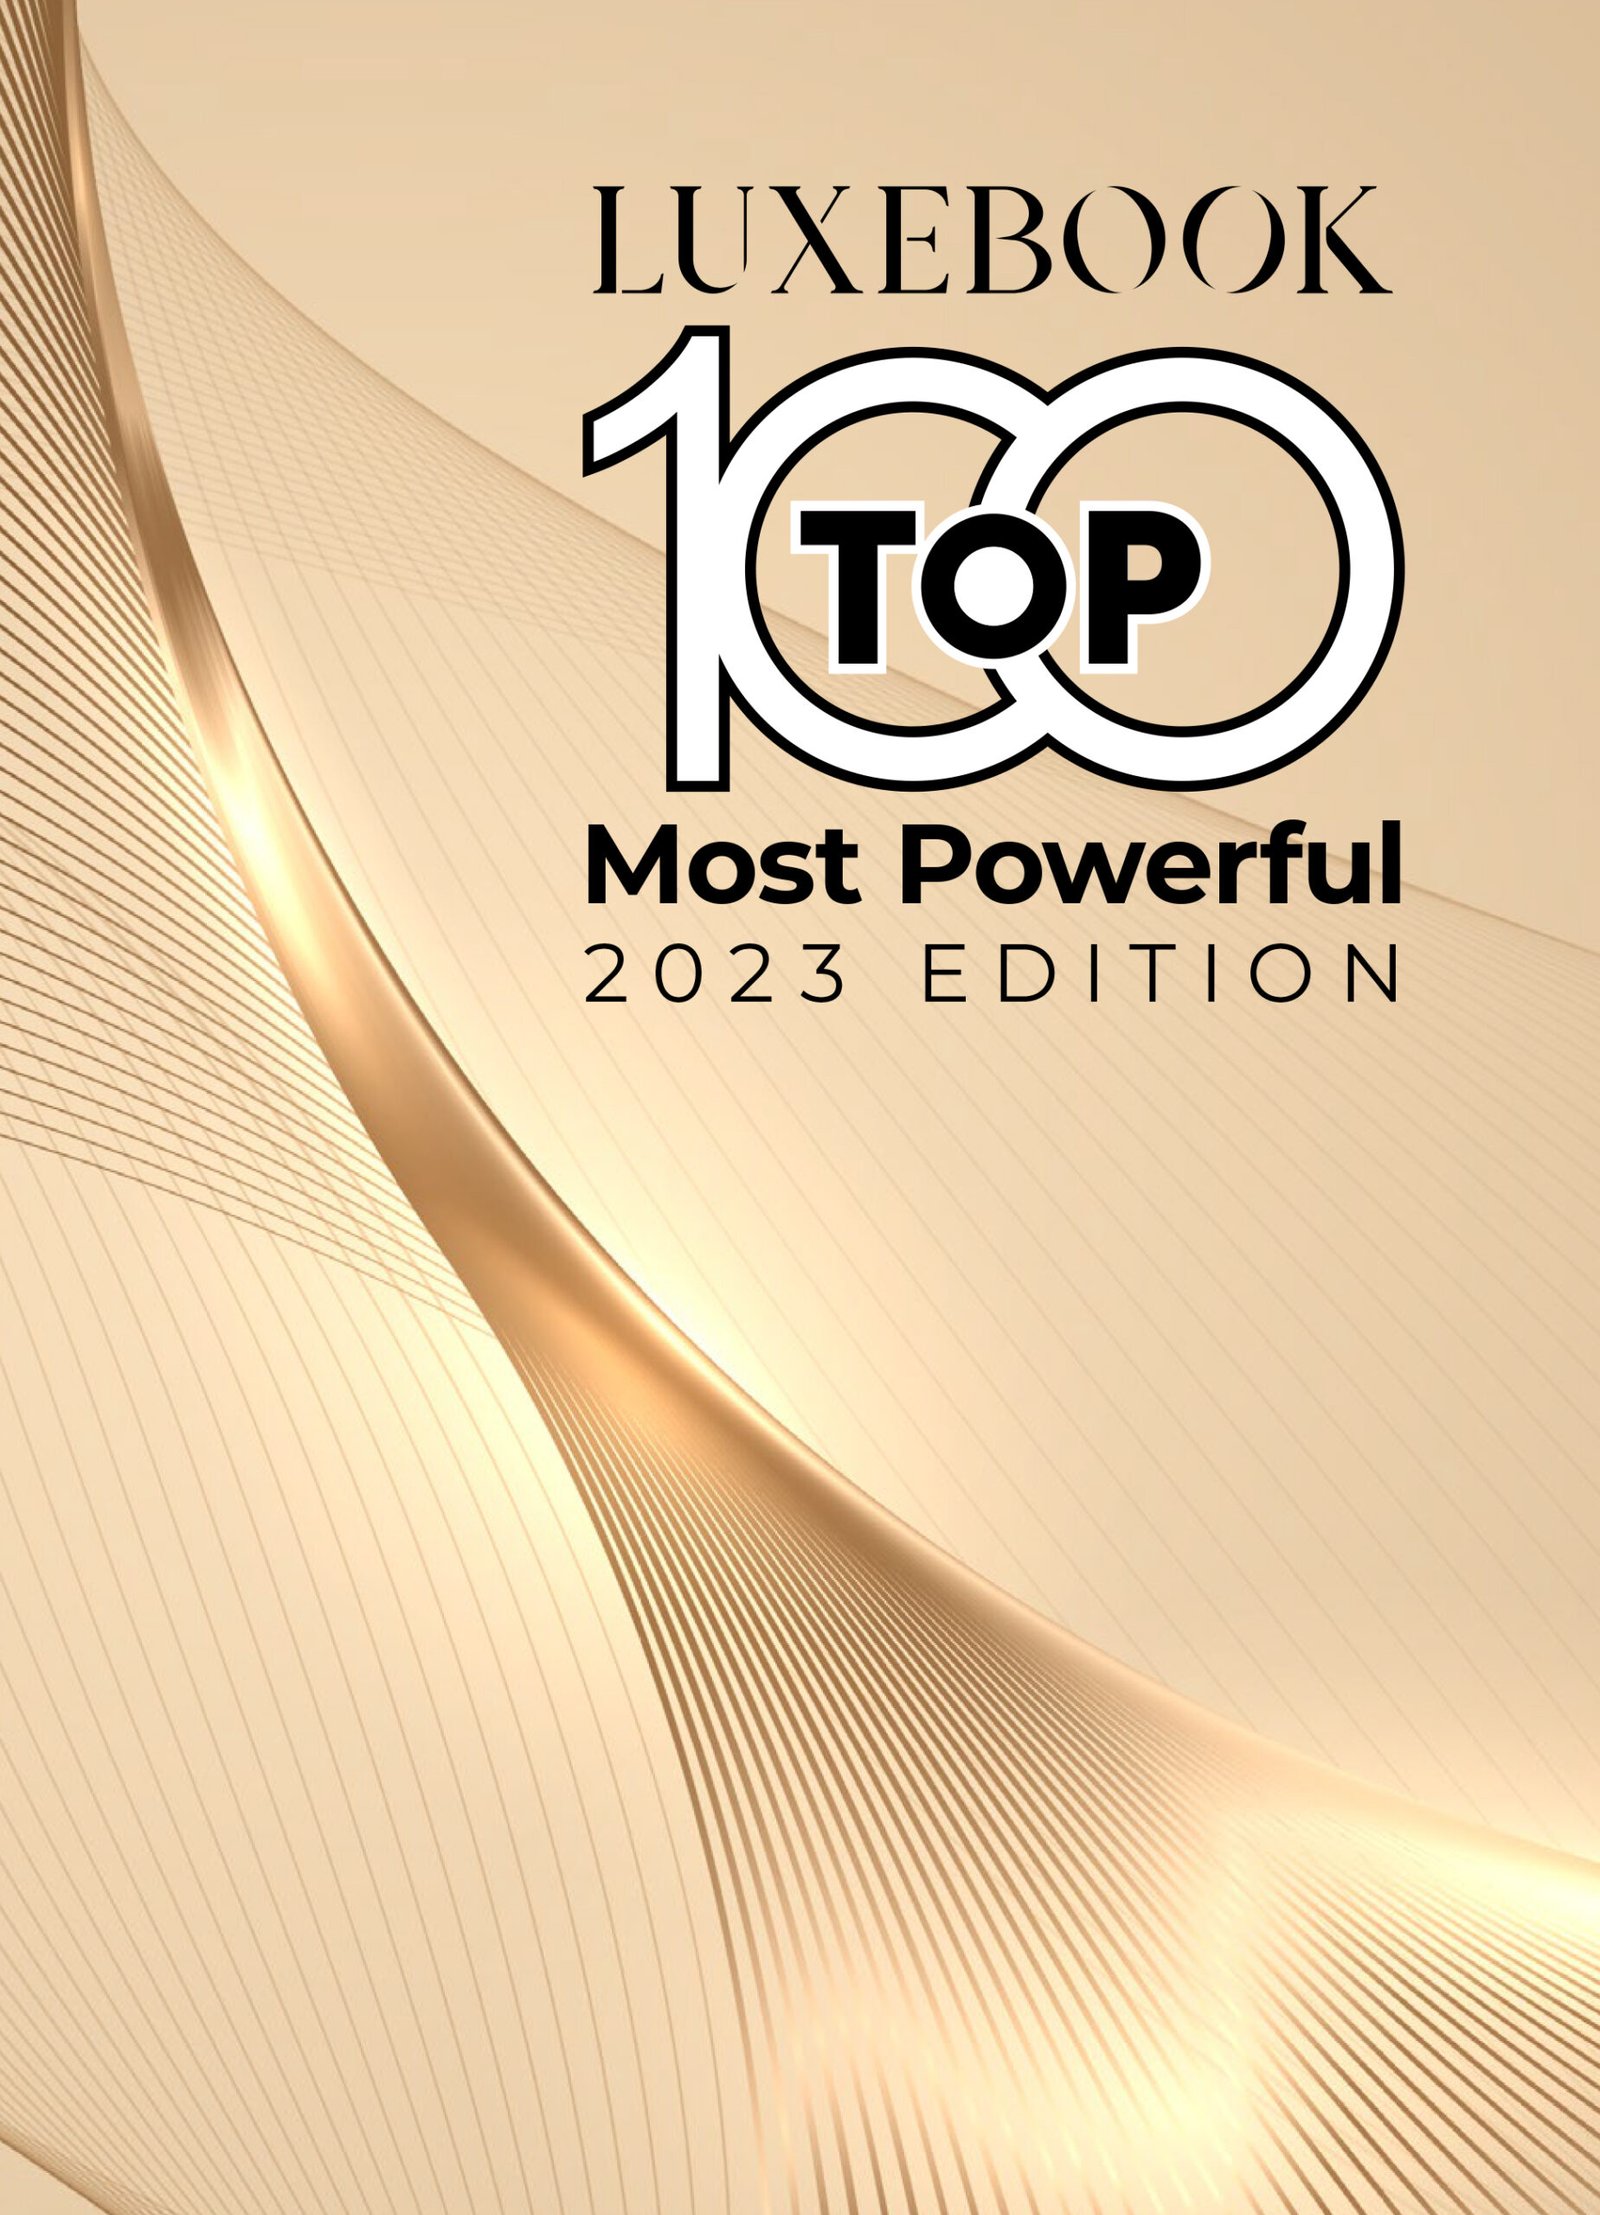 Luxebook Top 100 2023-1